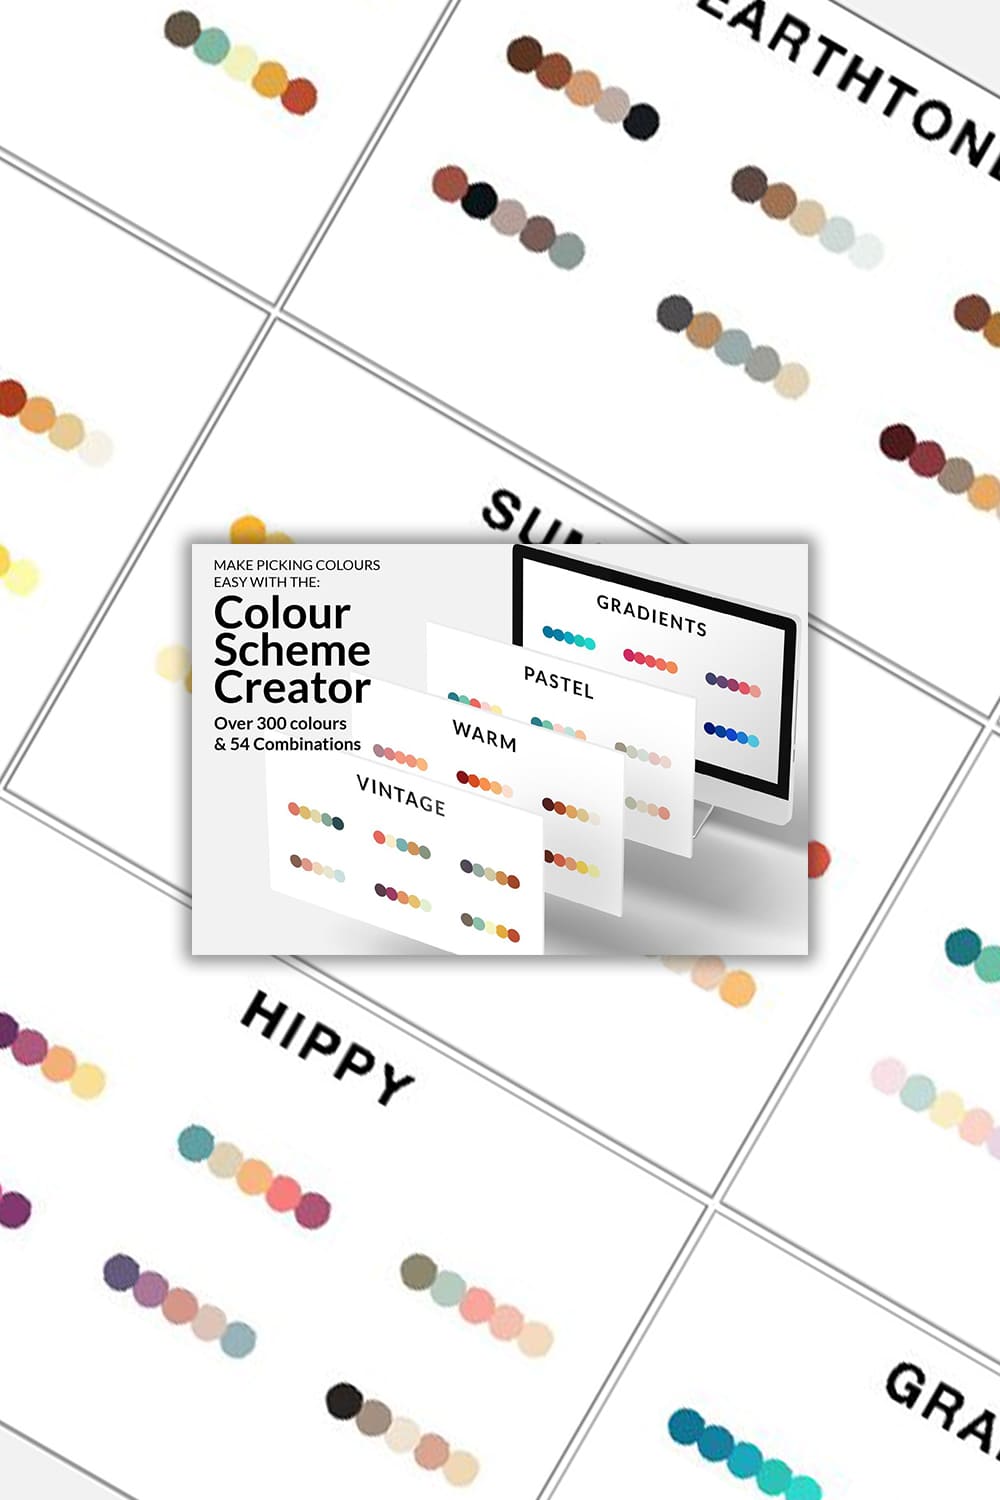 Colour Scheme Creator - Over 300 Colours & 54 Combinations.